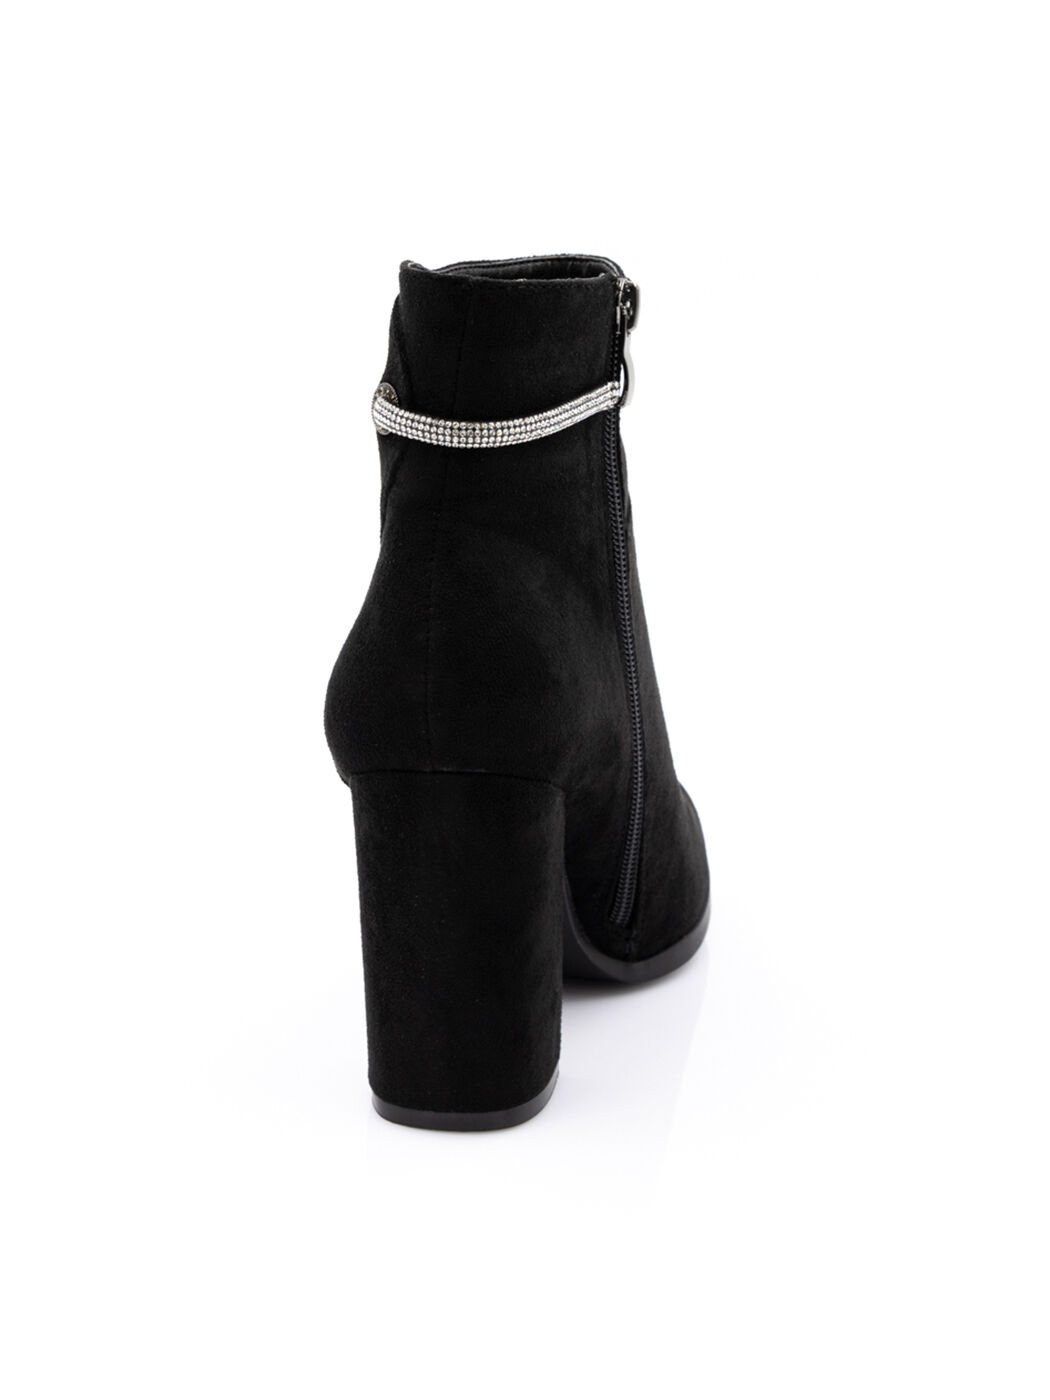 Ботинки женские черные экозамша каблук устойчивый демисезон от производителя BM вид 1